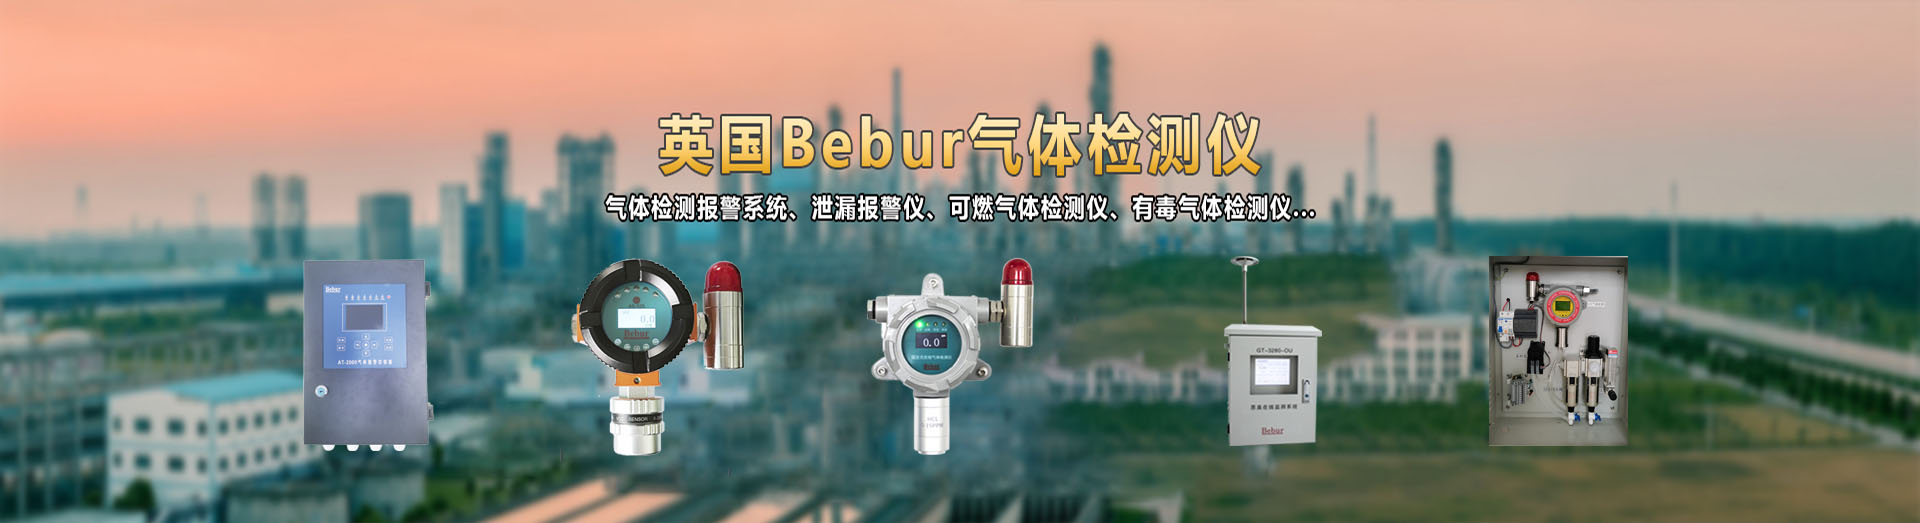 英国Bebur品牌在线式氧气检测仪系列产品